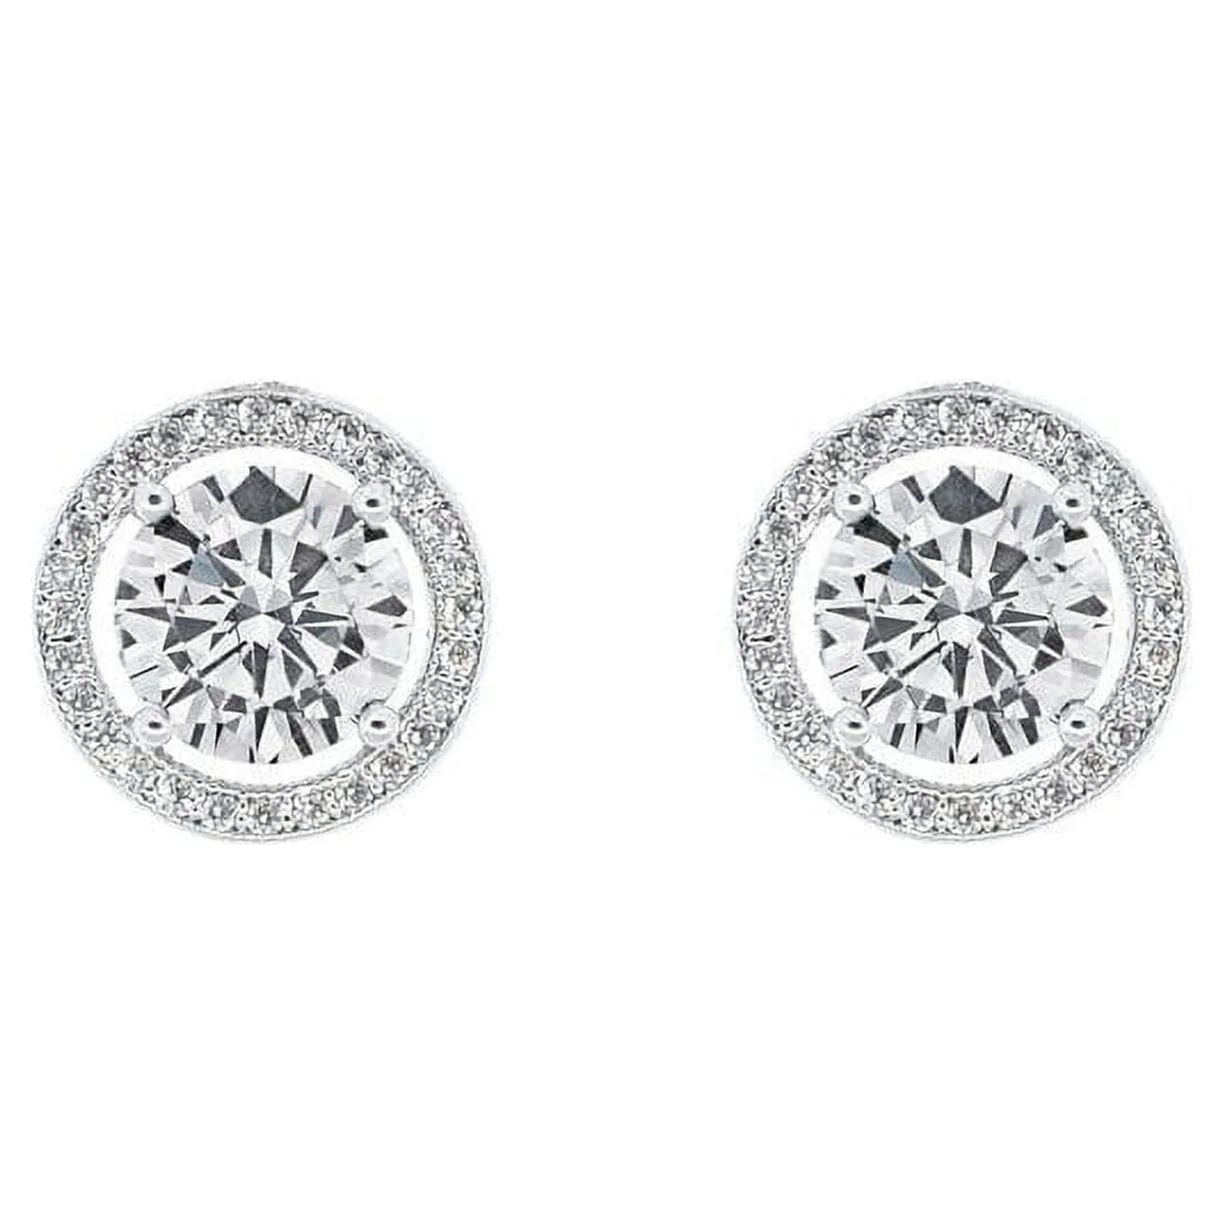 Cate & Chloe Ariel 18k White Gold Plated Silver Halo Stud Earrings | CZ Earrings for Women, Gift ... | Walmart (US)